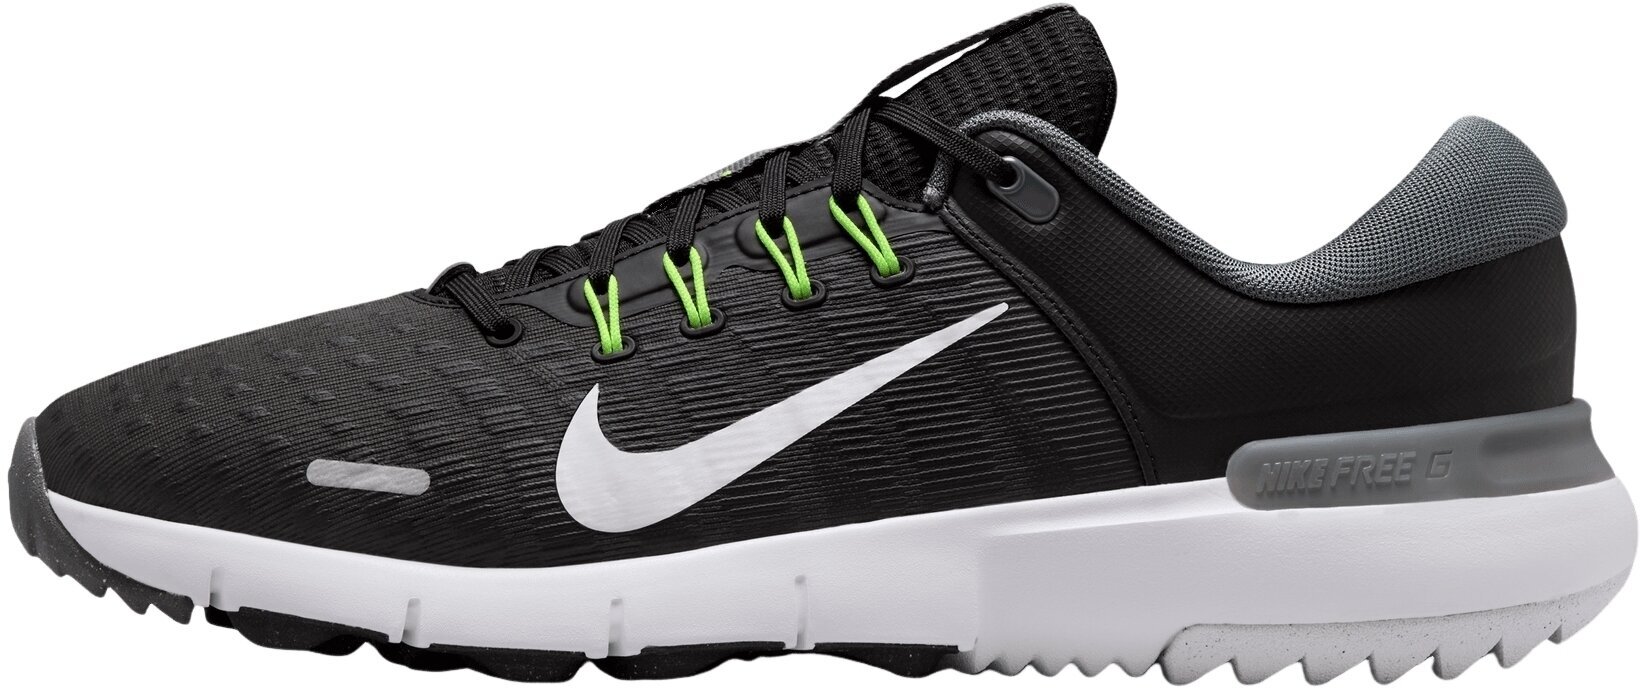 Golfsko til mænd Nike Free Golf Unisex Shoes Black/White/Iron Grey/Volt 45